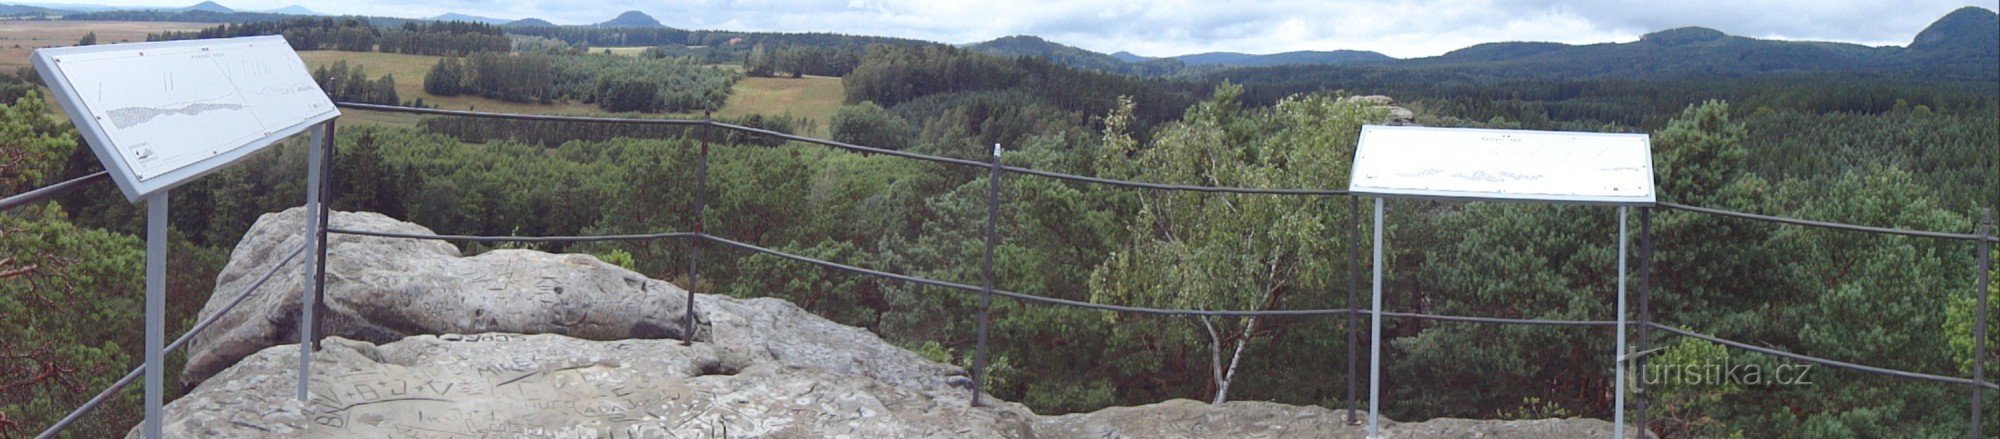 panorama dall'altopiano sommitale delle Rocce del Corvo